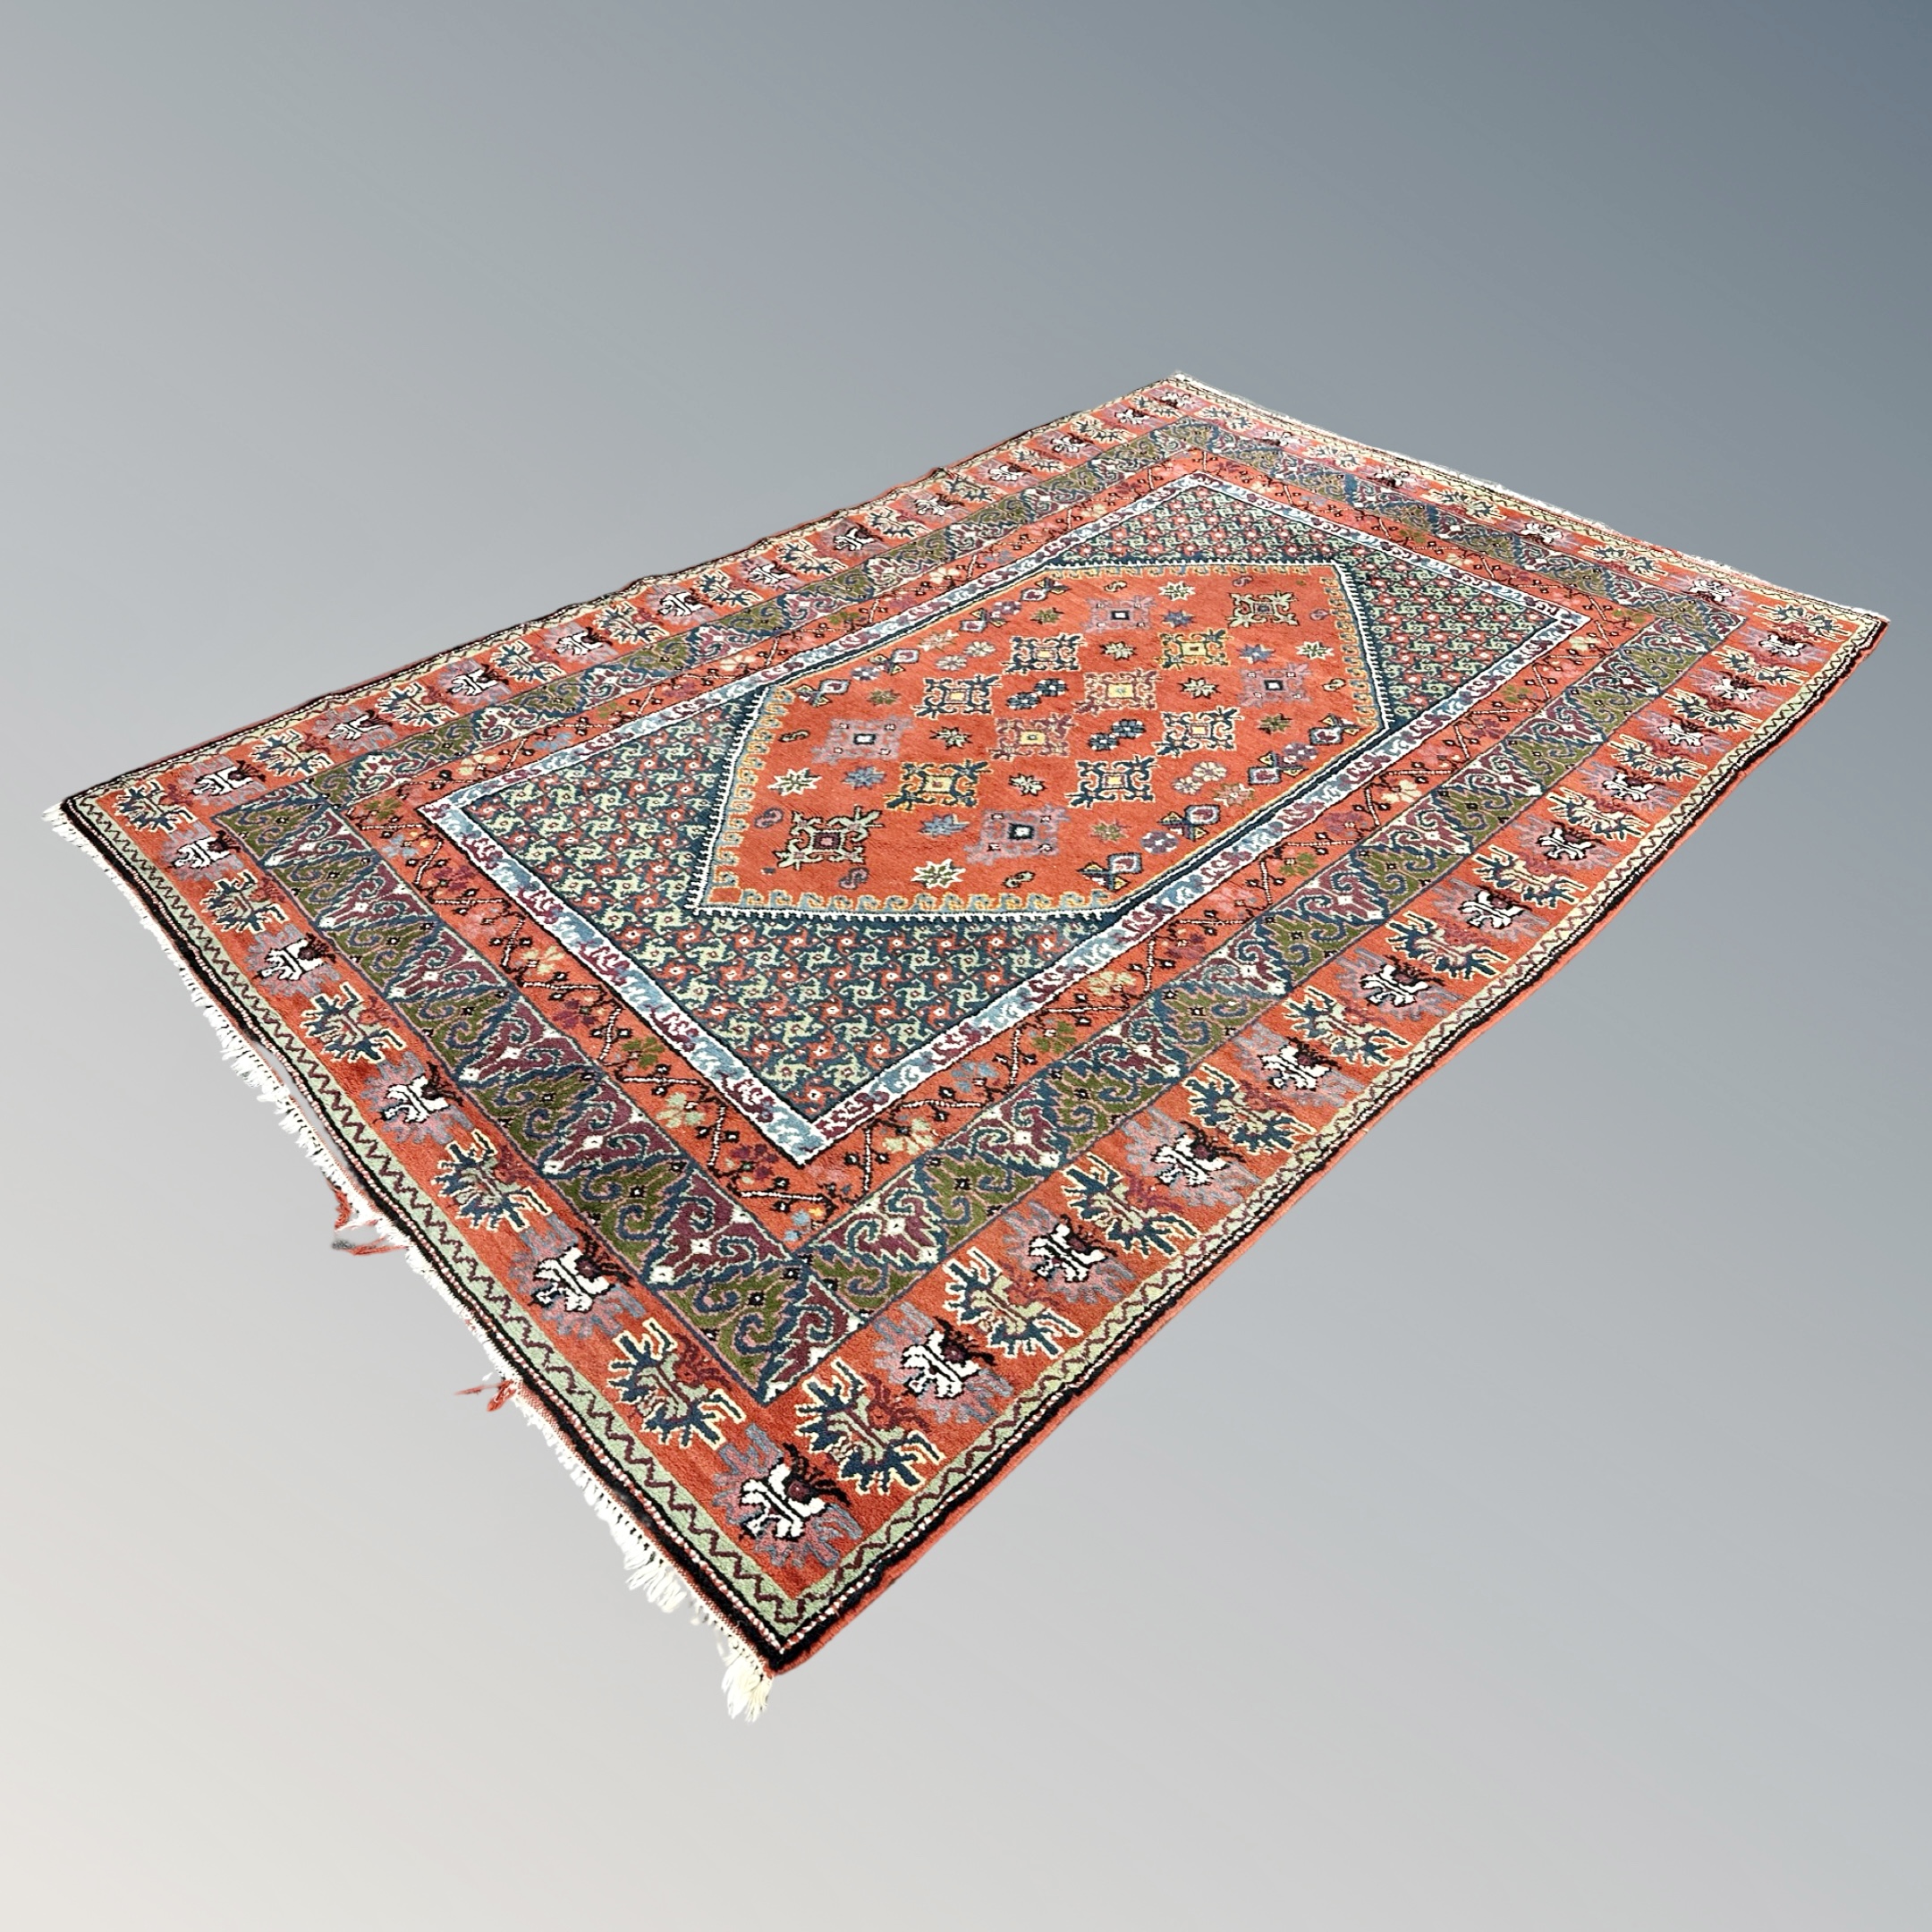 An eastern geometric woolen rug,